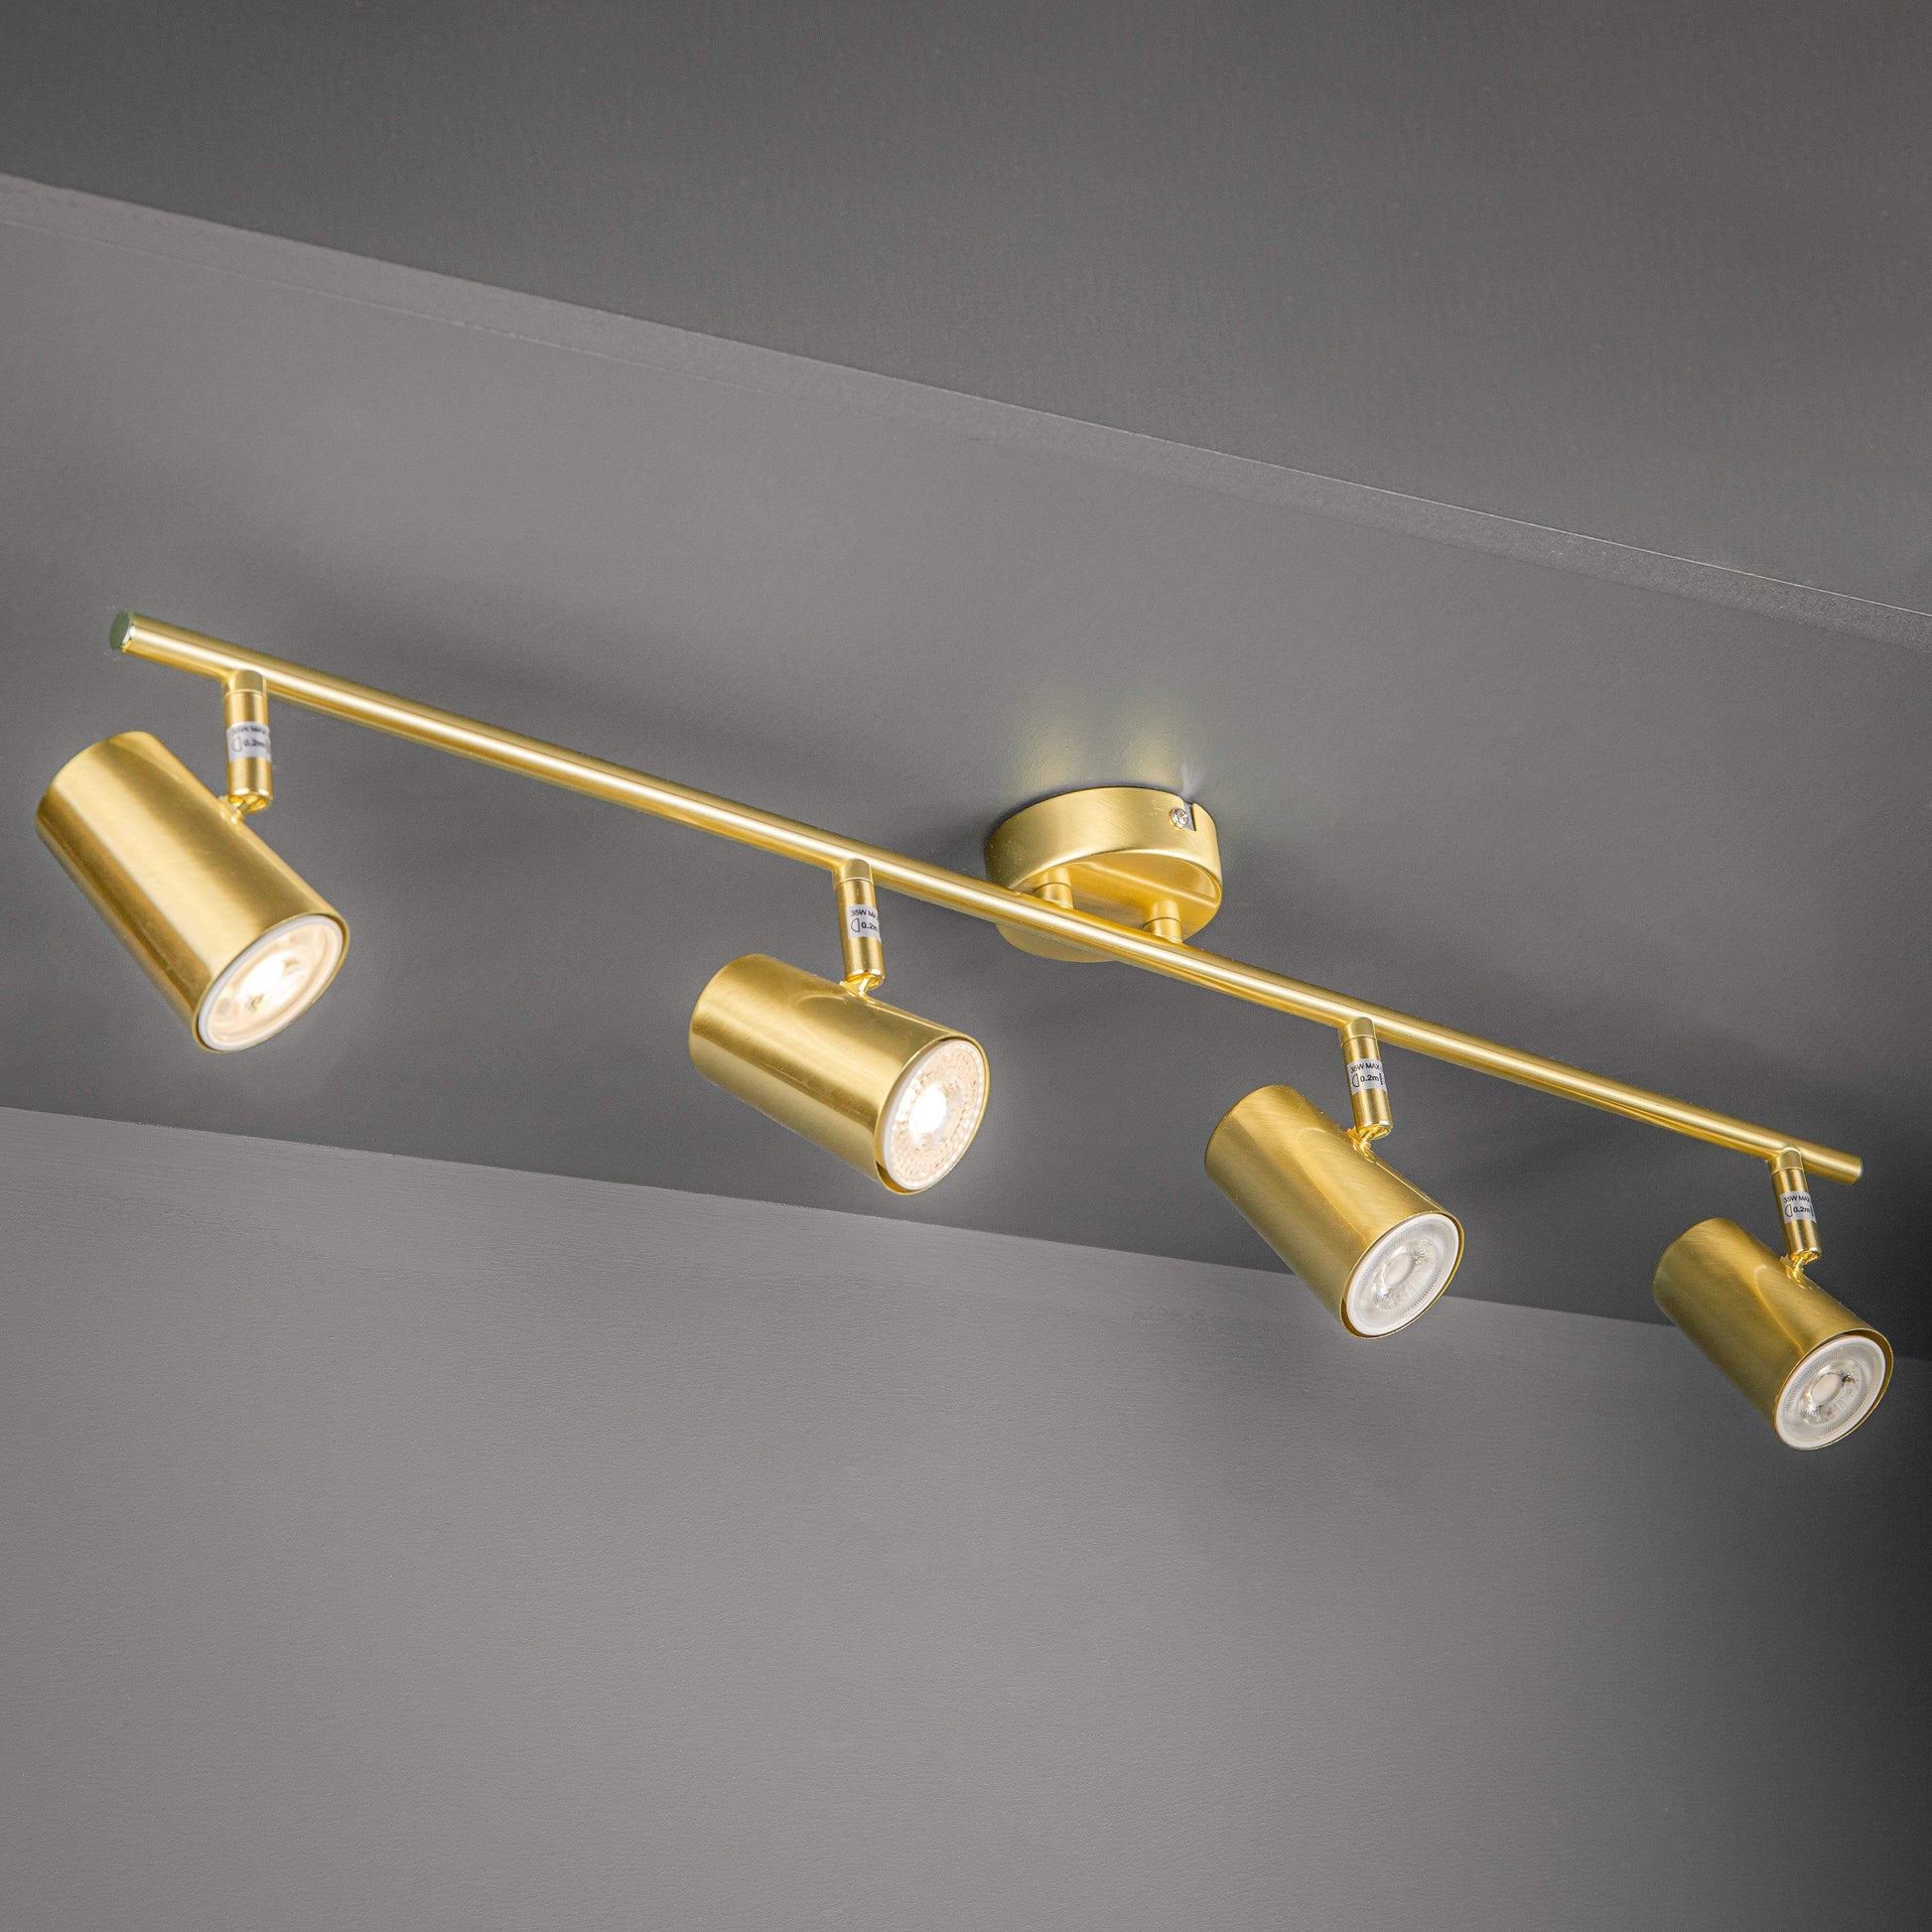 Lights  -  Forum Inlight Harvey Spot 4 Stain Brass/Gold Bar Ceiling Lights  -  50155592